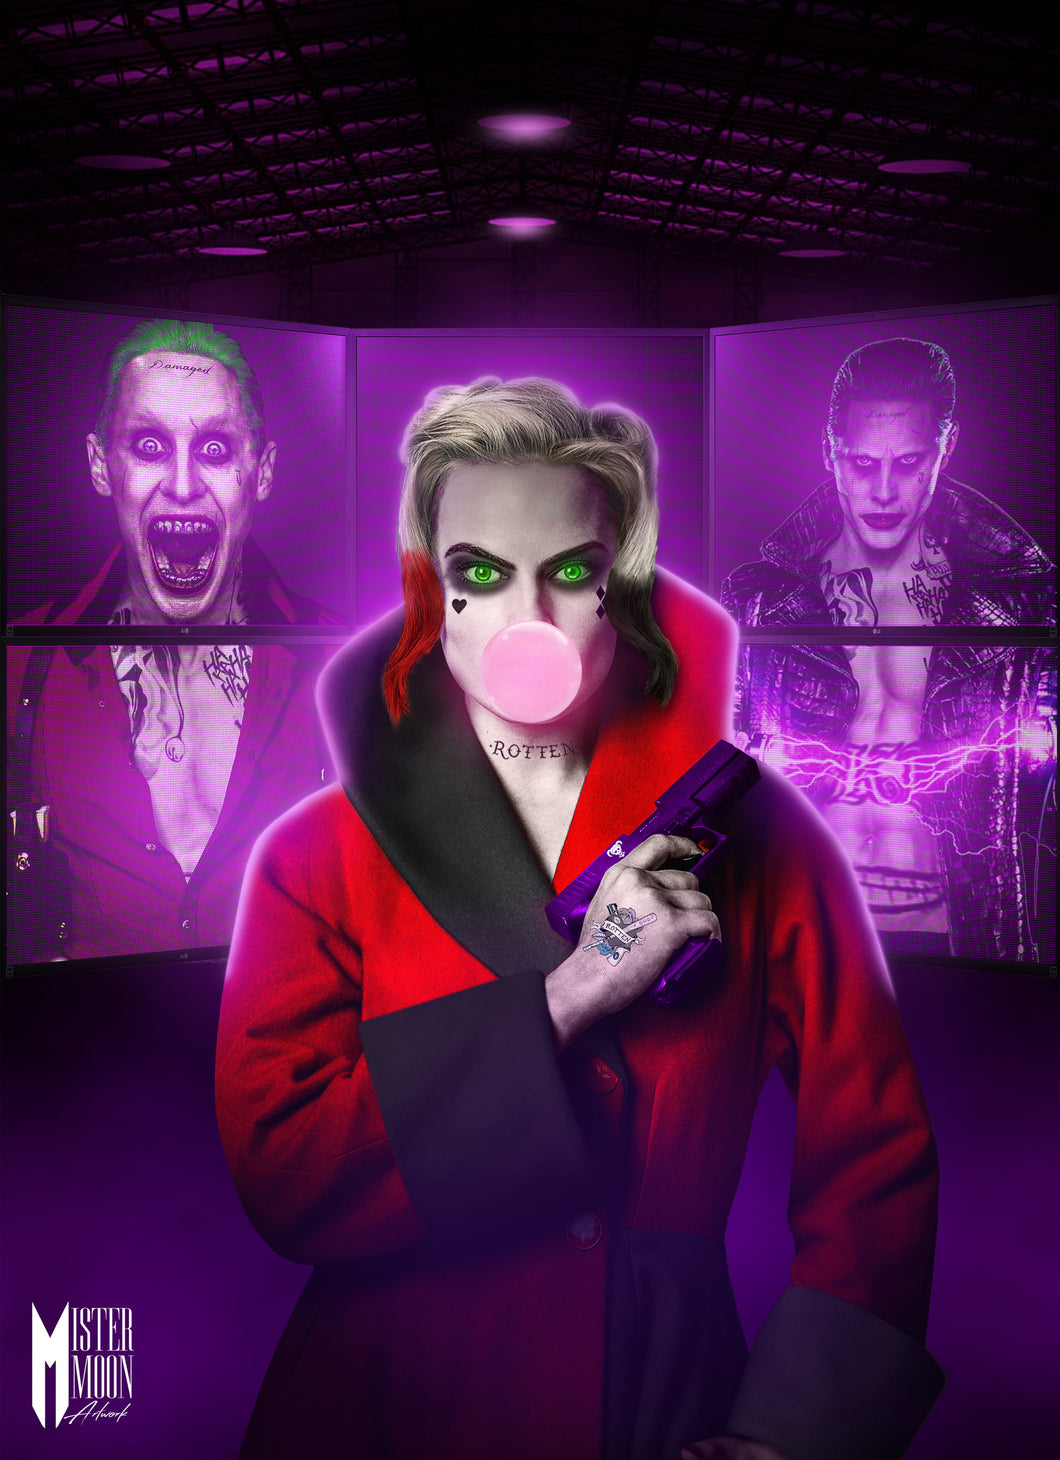 Harley Quinn Joker Neon Movie Poster Framed or Unframed Glossy Poster Free UK Shipping!!!